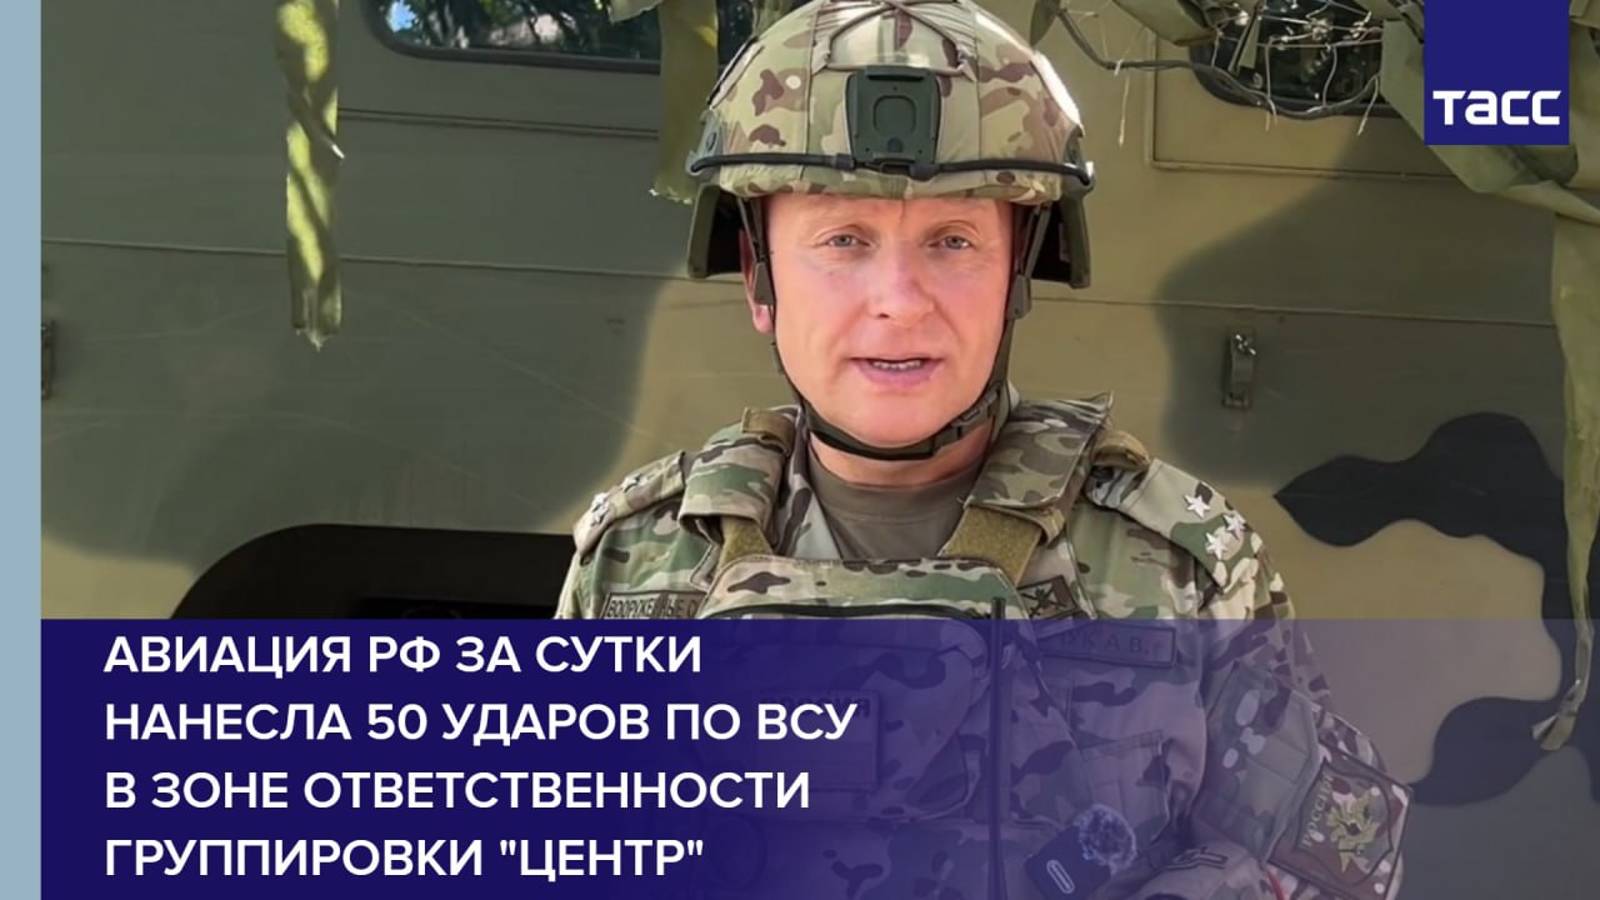 Авиация РФ за сутки нанесла 50 ударов по ВСУ в зоне ответственности группировки "Центр"